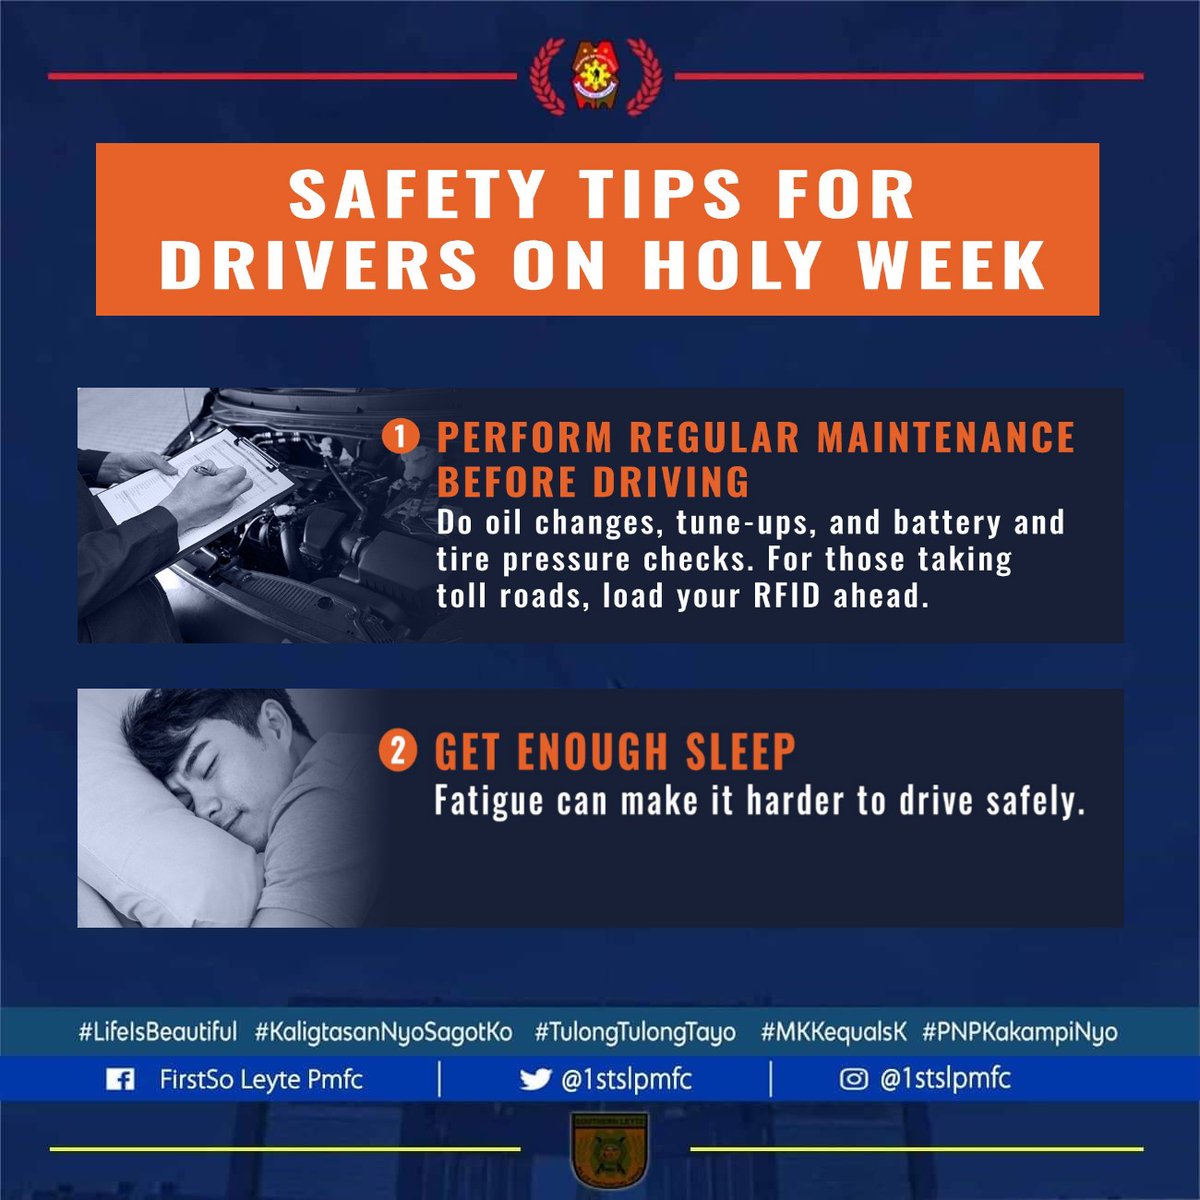 Safety Tips for Drivers on Holy Week

#LifeIsBeautiful
#KaligtasaNyoSagotKo
#TulongTulongTayo
#MKKequalsK
#PNPKakampiNyo